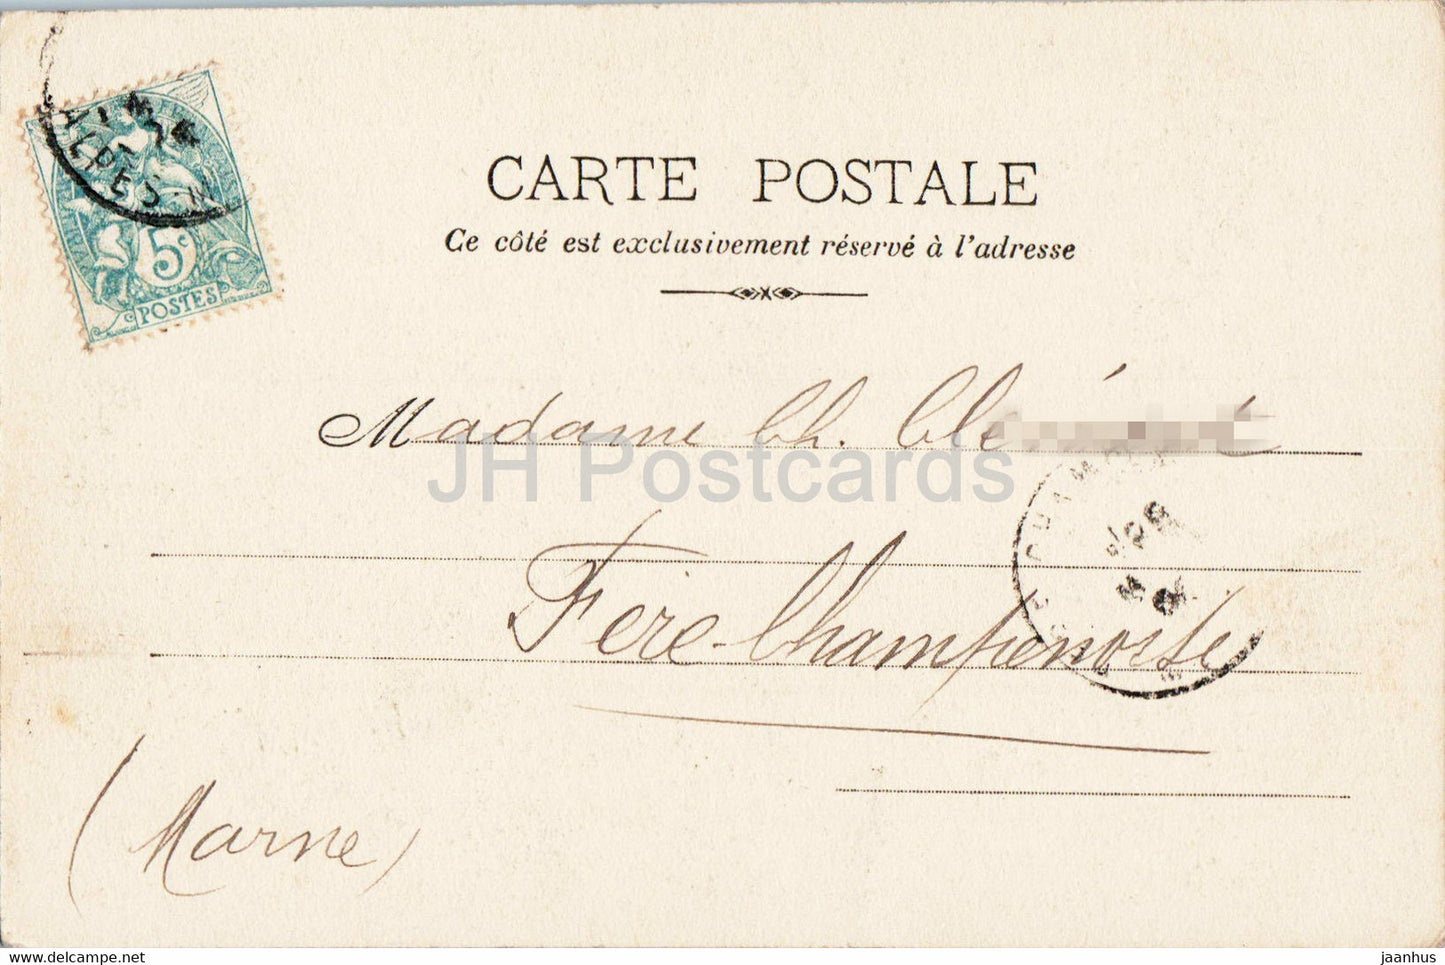 Beaulieu - Vue Generale - Vue prise de la petite Afrique - 328 - old postcard - France - used